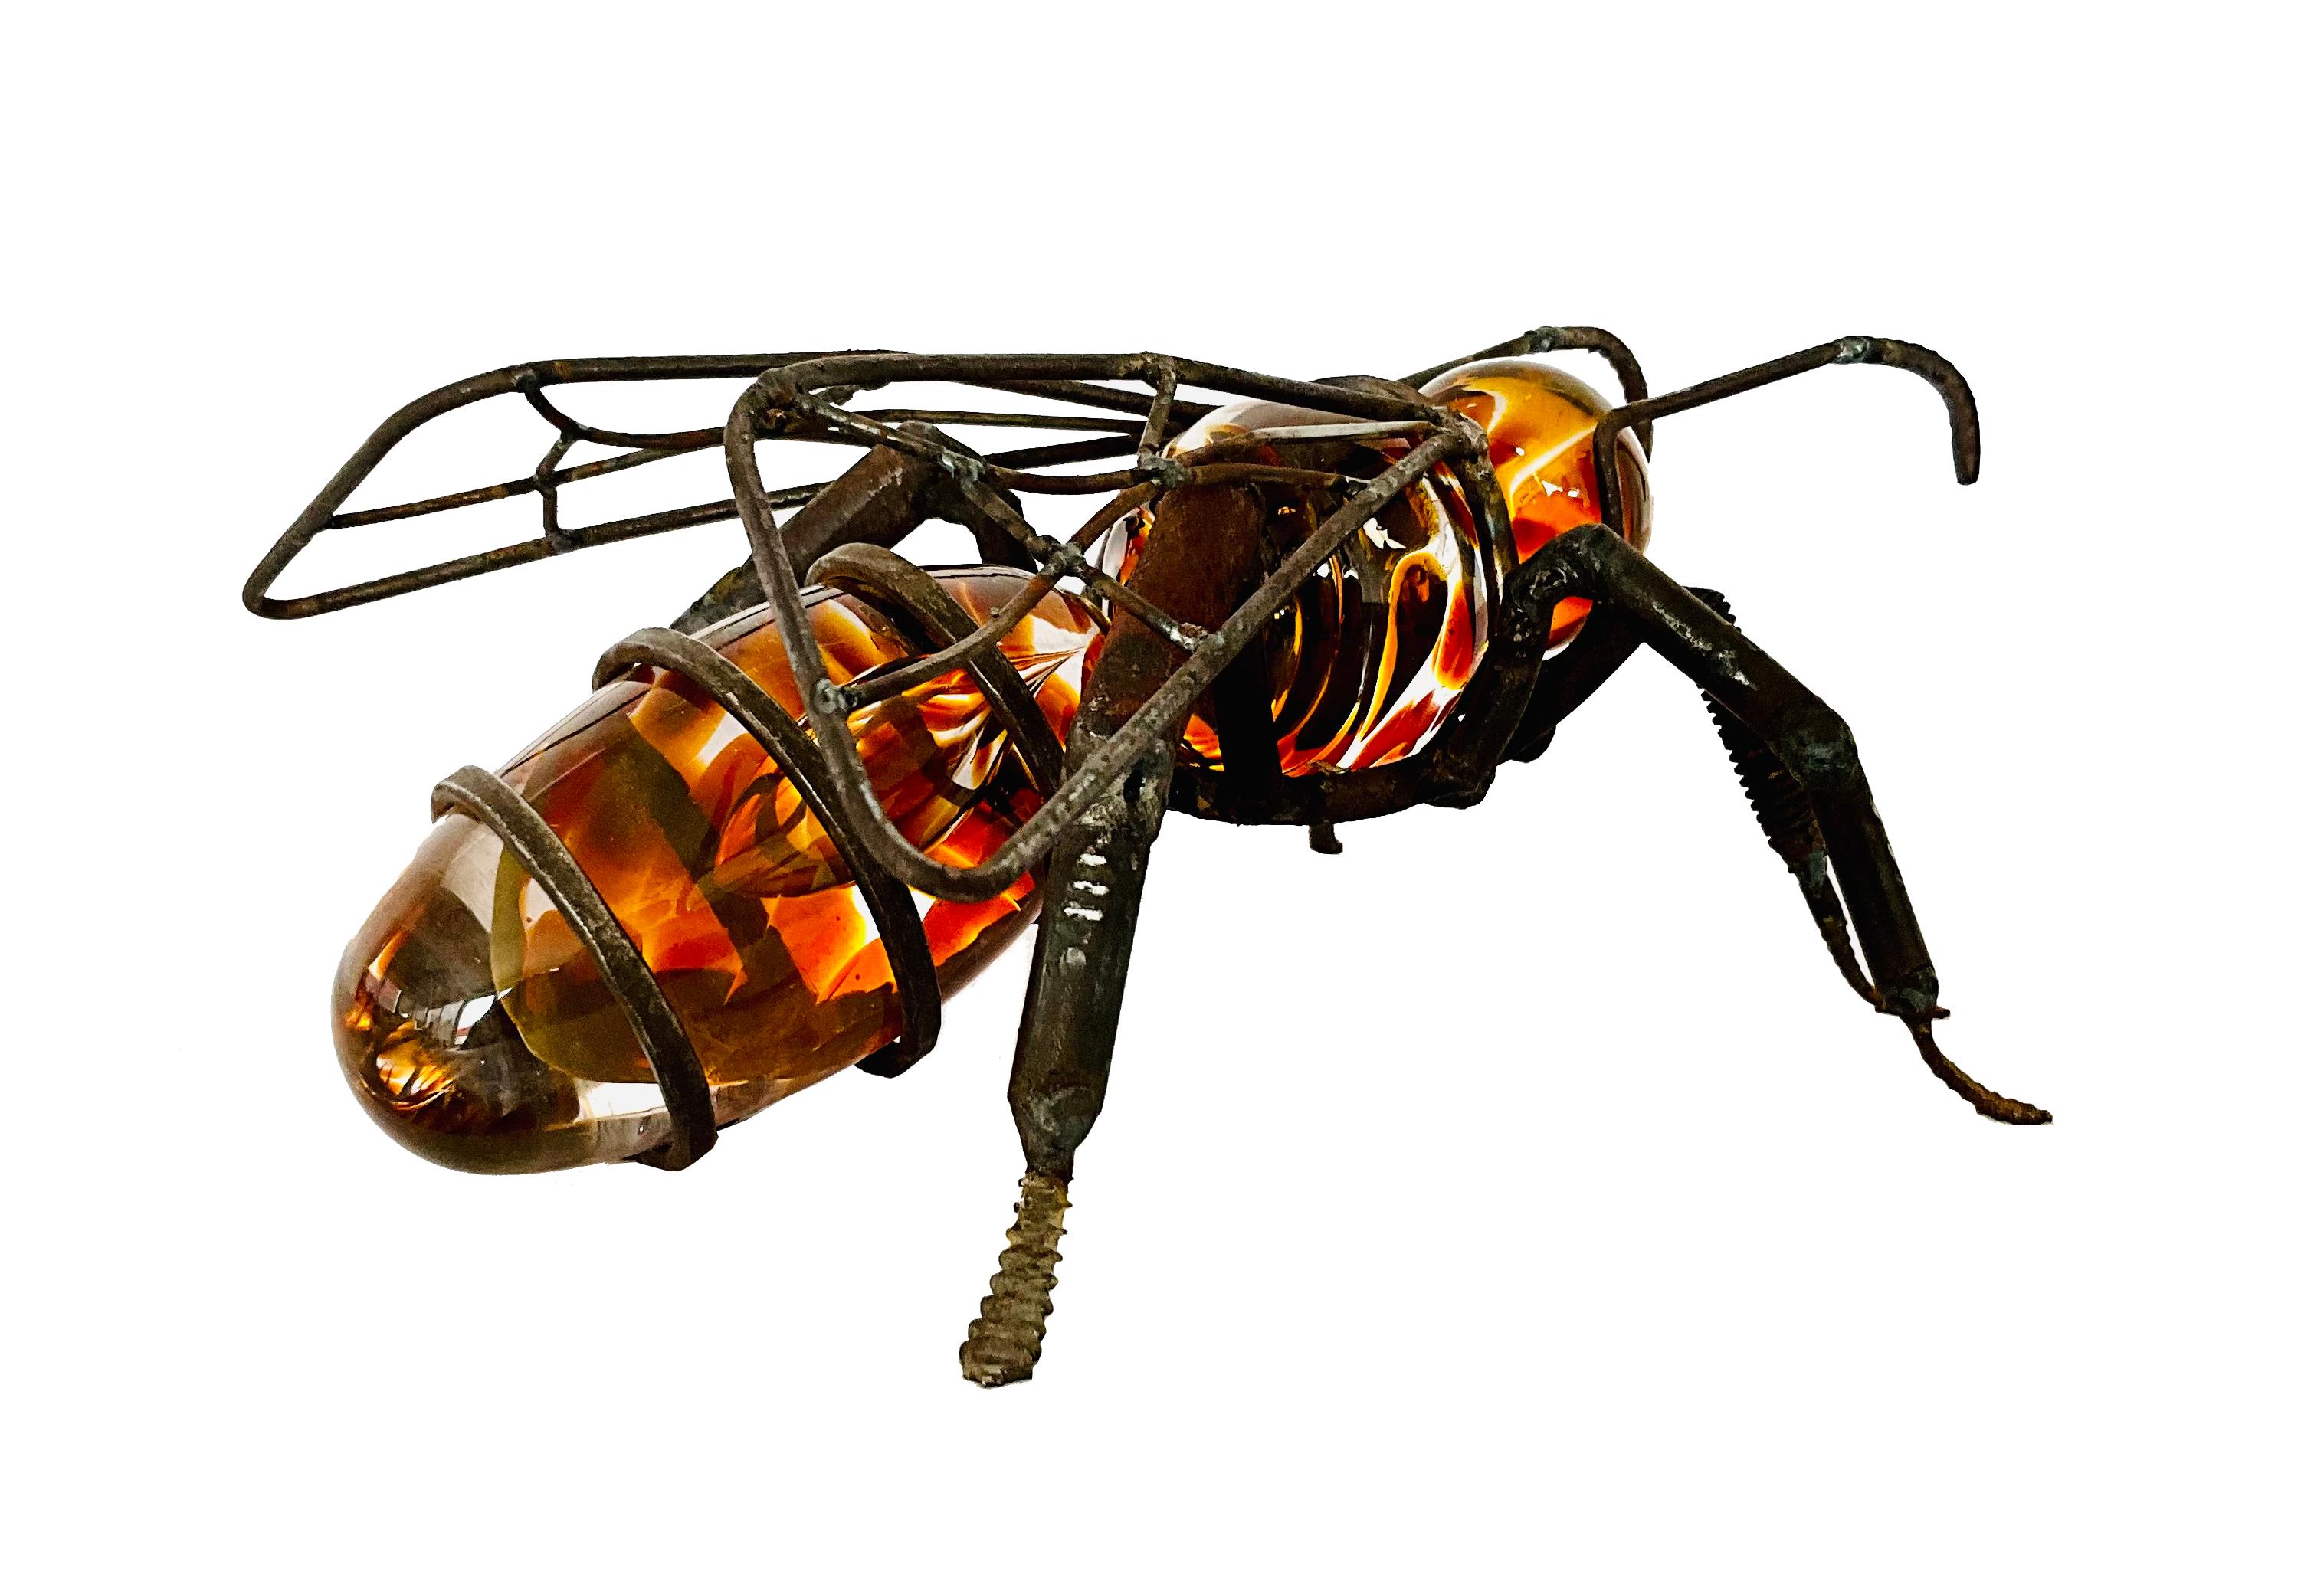 L'ABEILLE

La sculpture de Marcos Romero, représentant un abeille faite de fer industriel recyclé et de verre soufflé, est une œuvre d'art contemporain fascinante. Romero a créé une pièce qui combine la dureté et la résistance du métal avec la